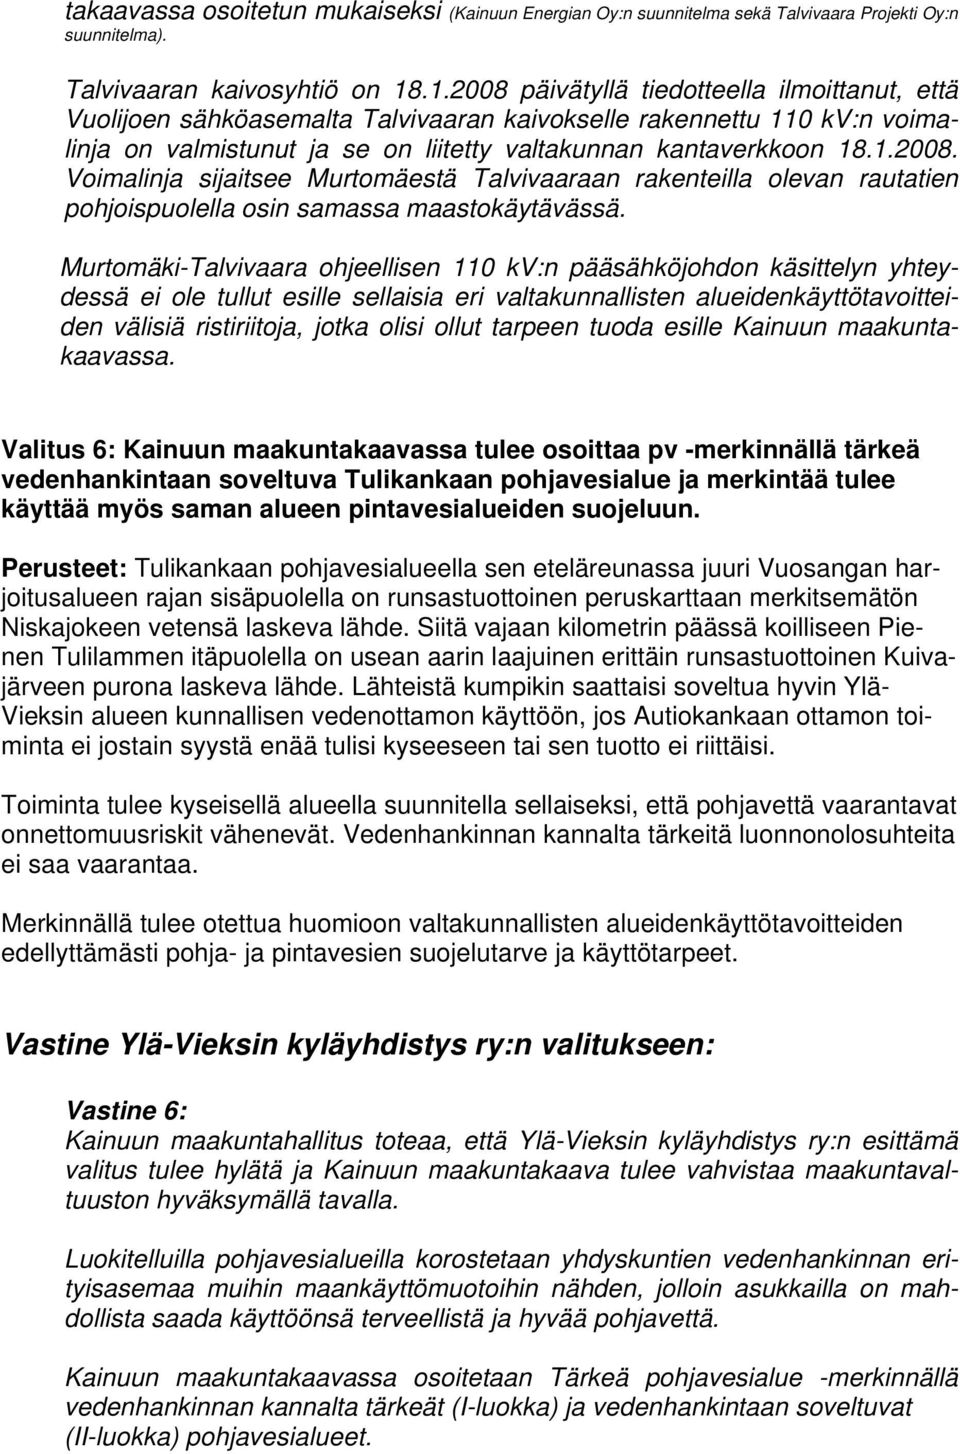 Murtomäki-Talvivaara ohjeellisen 110 kv:n pääsähköjohdon käsittelyn yhteydessä ei ole tullut esille sellaisia eri valtakunnallisten alueidenkäyttötavoitteiden välisiä ristiriitoja, jotka olisi ollut